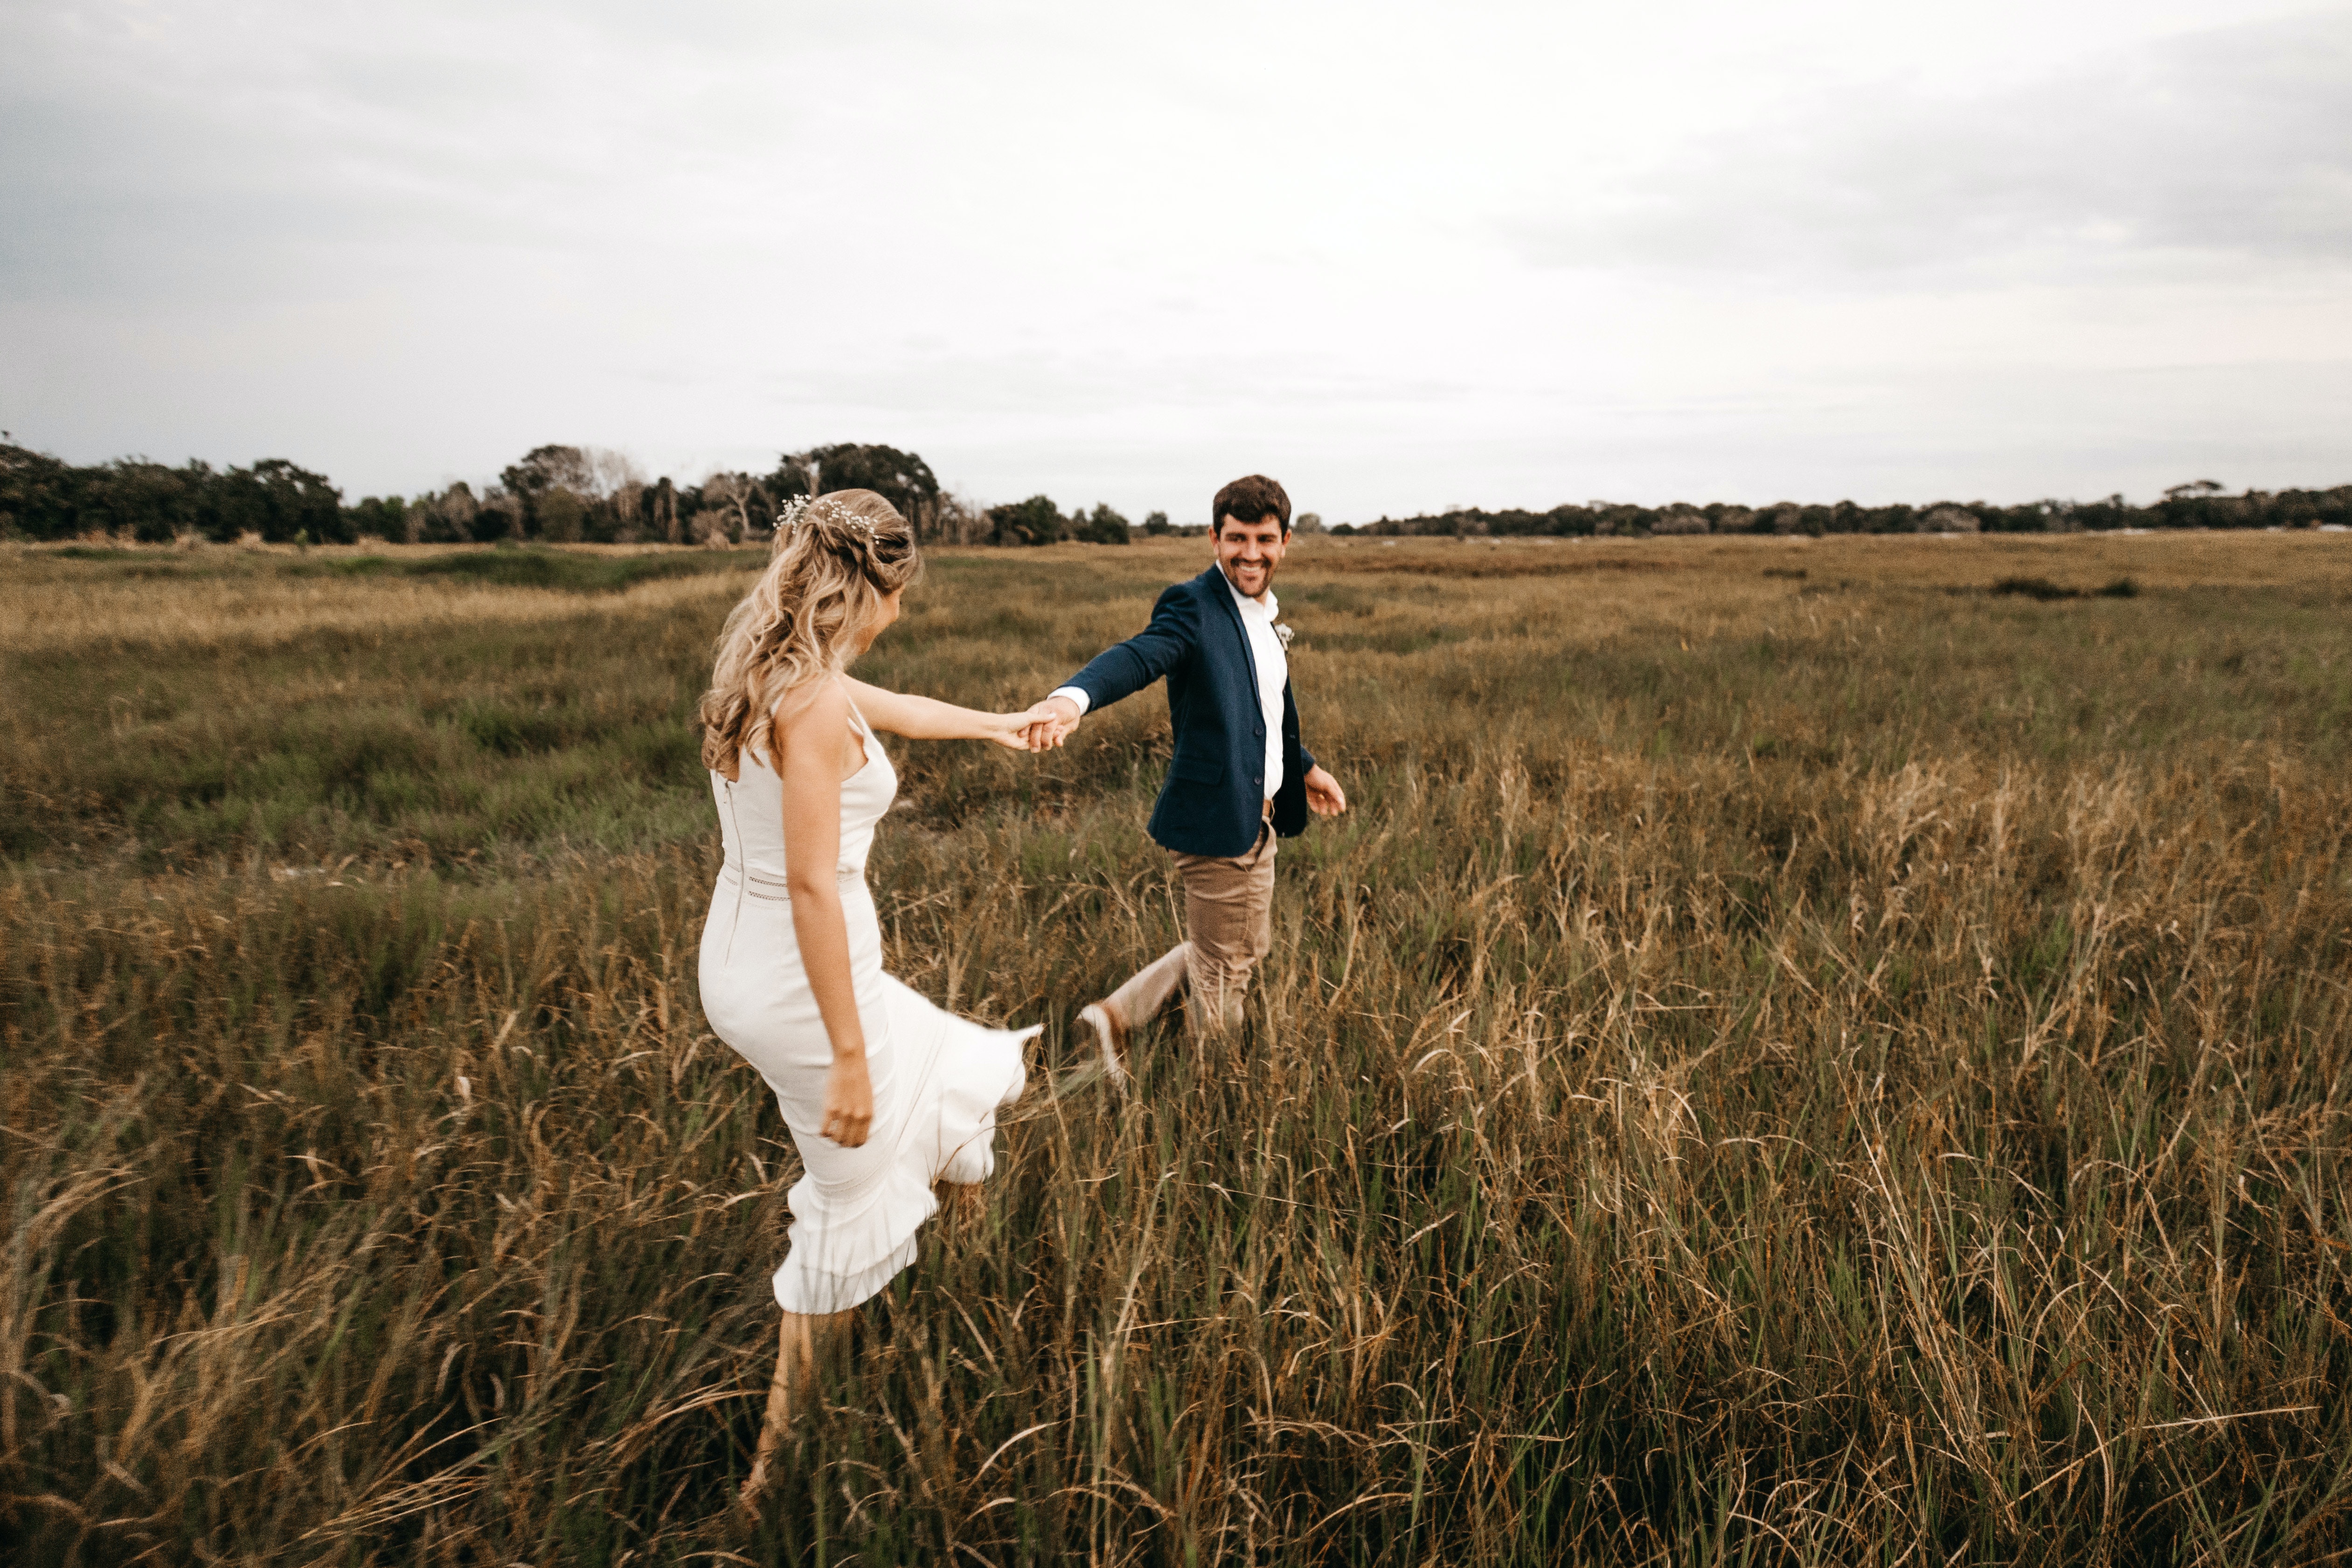 Couple walking in a field | Source: Pexels